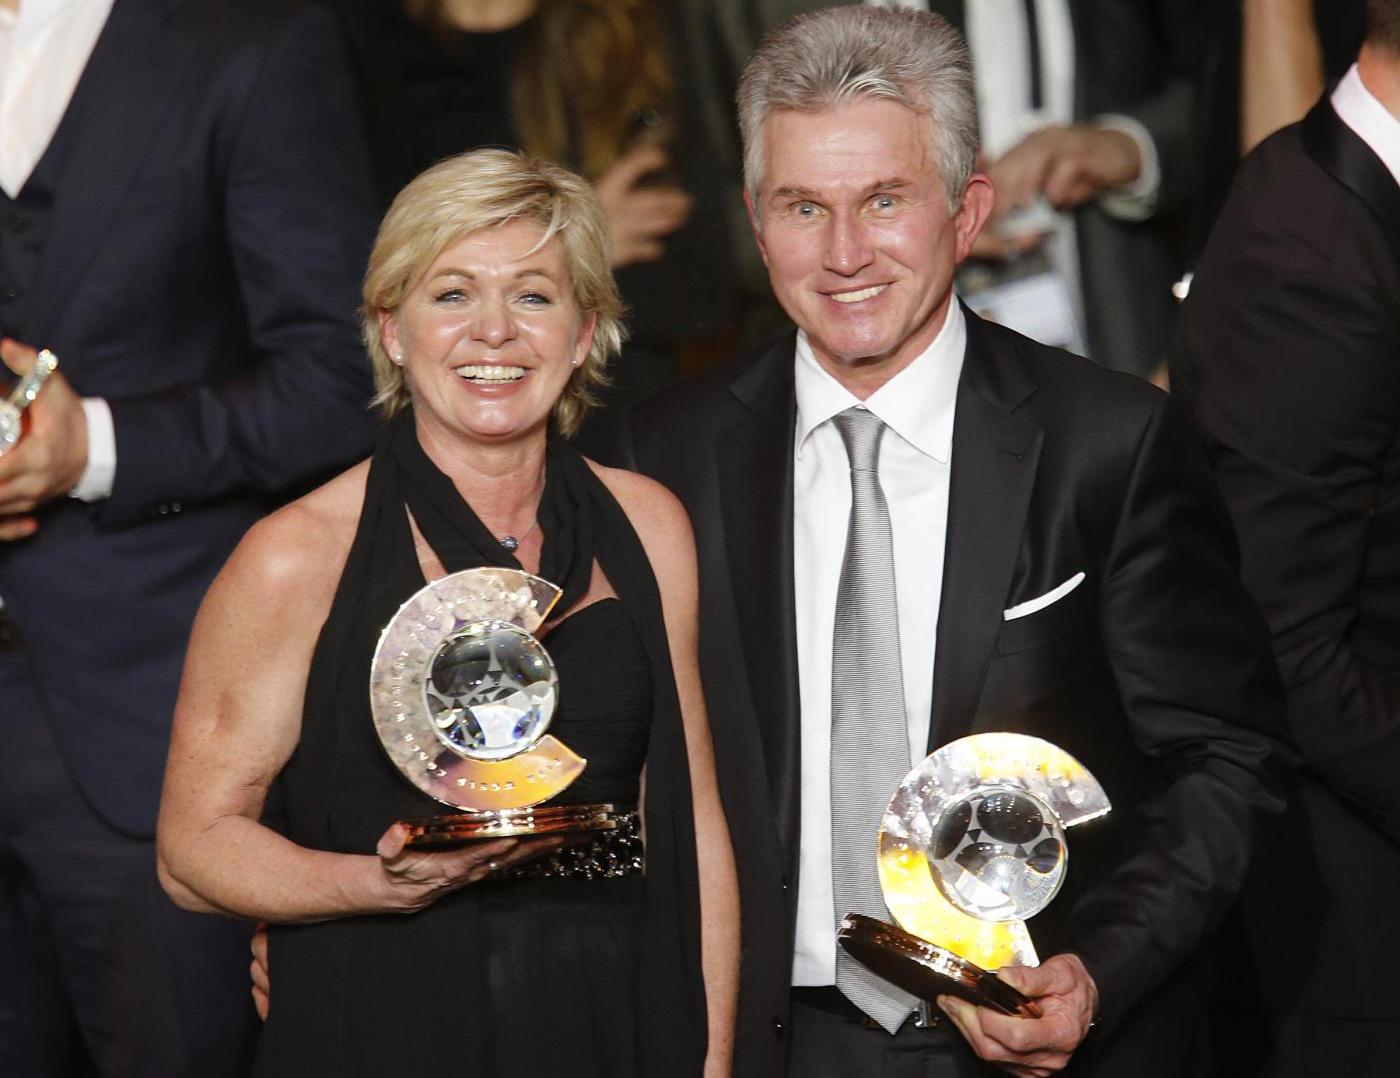 Jupp Heynckes e Silvia Neid premiati come migliori allenatori 2013